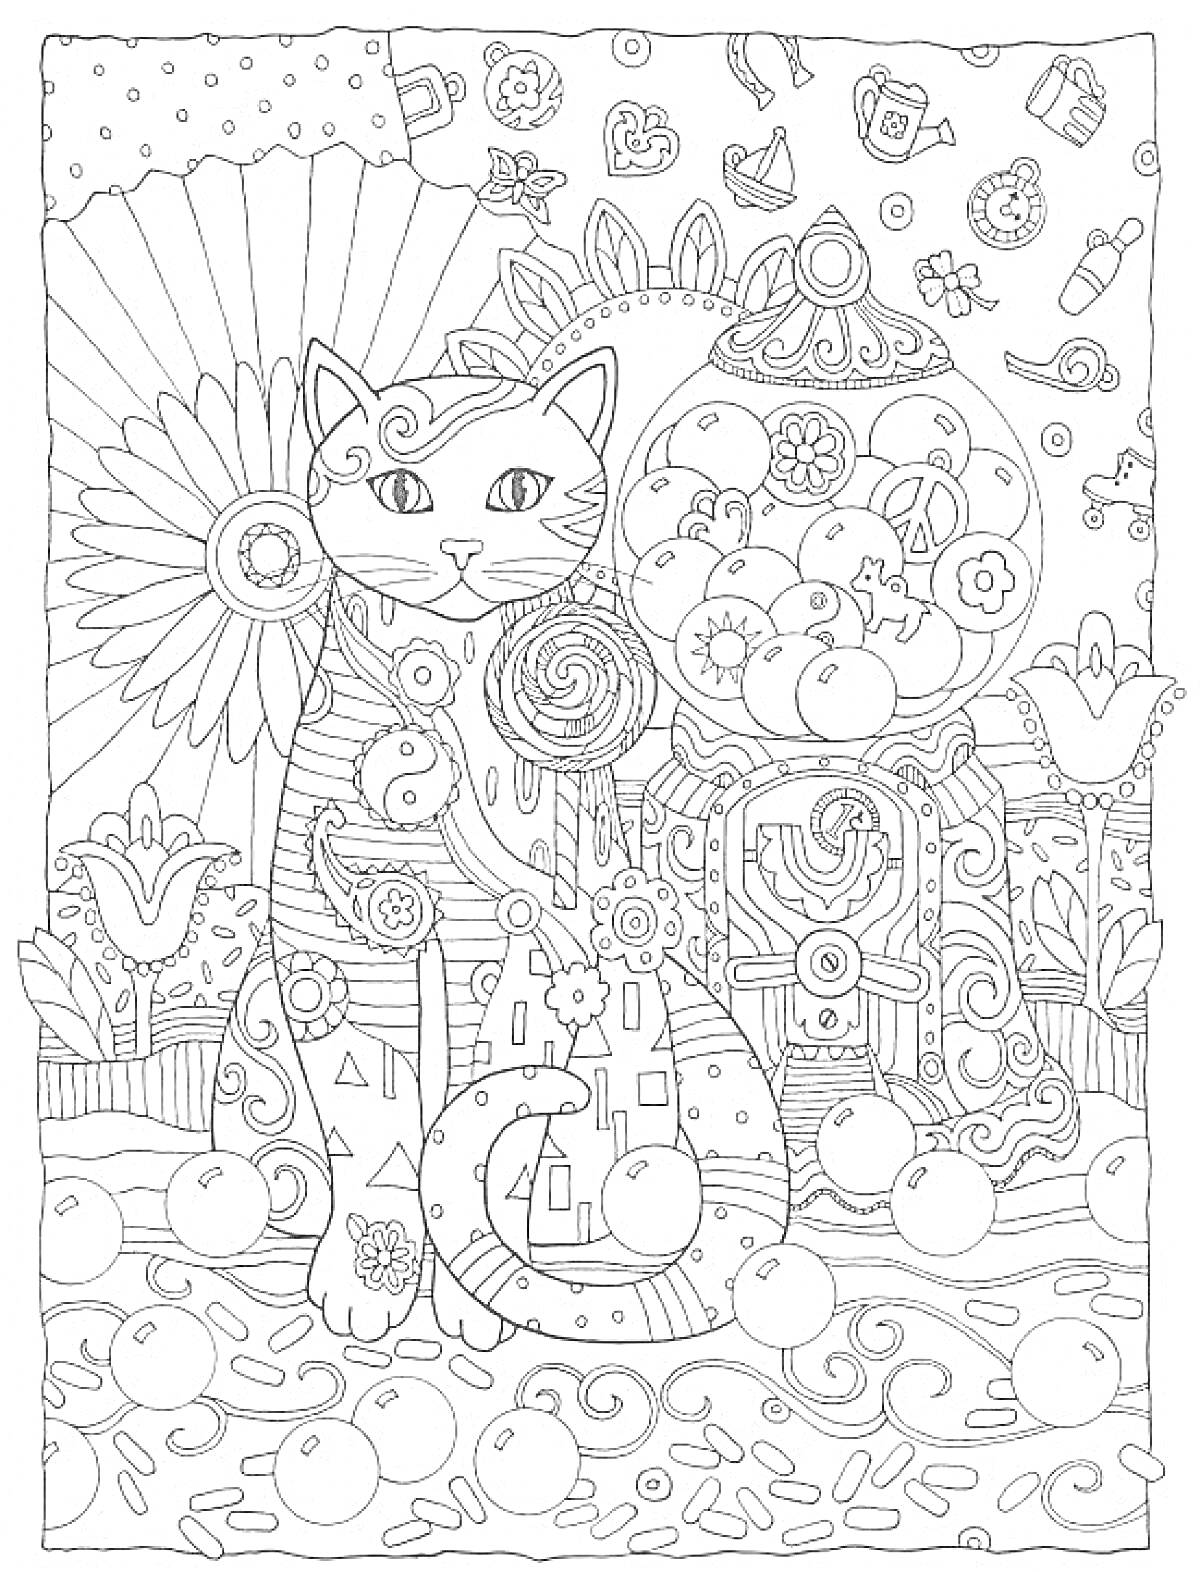 Раскраска Антистресс раскраска с кошкой, цветком, цветочными орнаментами и банками с шариками